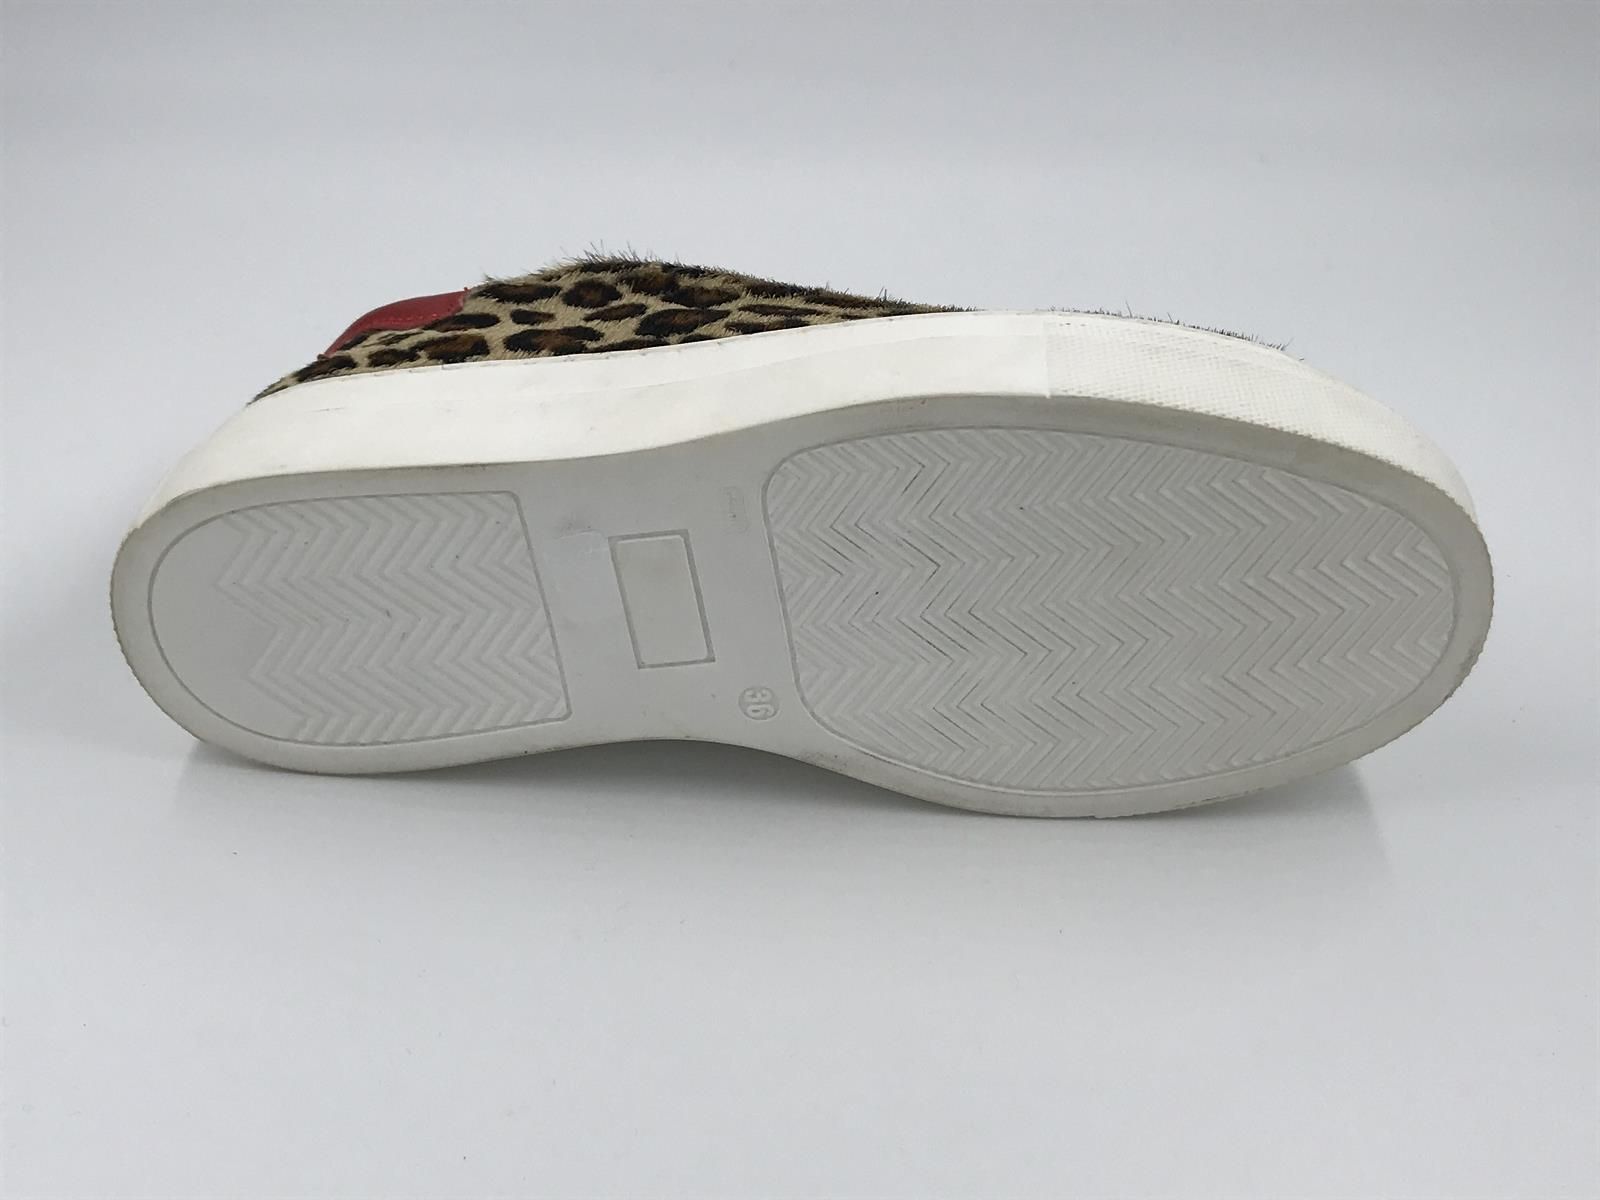 hospita Bestrating Lucht Fiam dam sneaker led leopard (1402/11 cavallino maculato) - Stiletto  Schoenen (Oudenaarde)